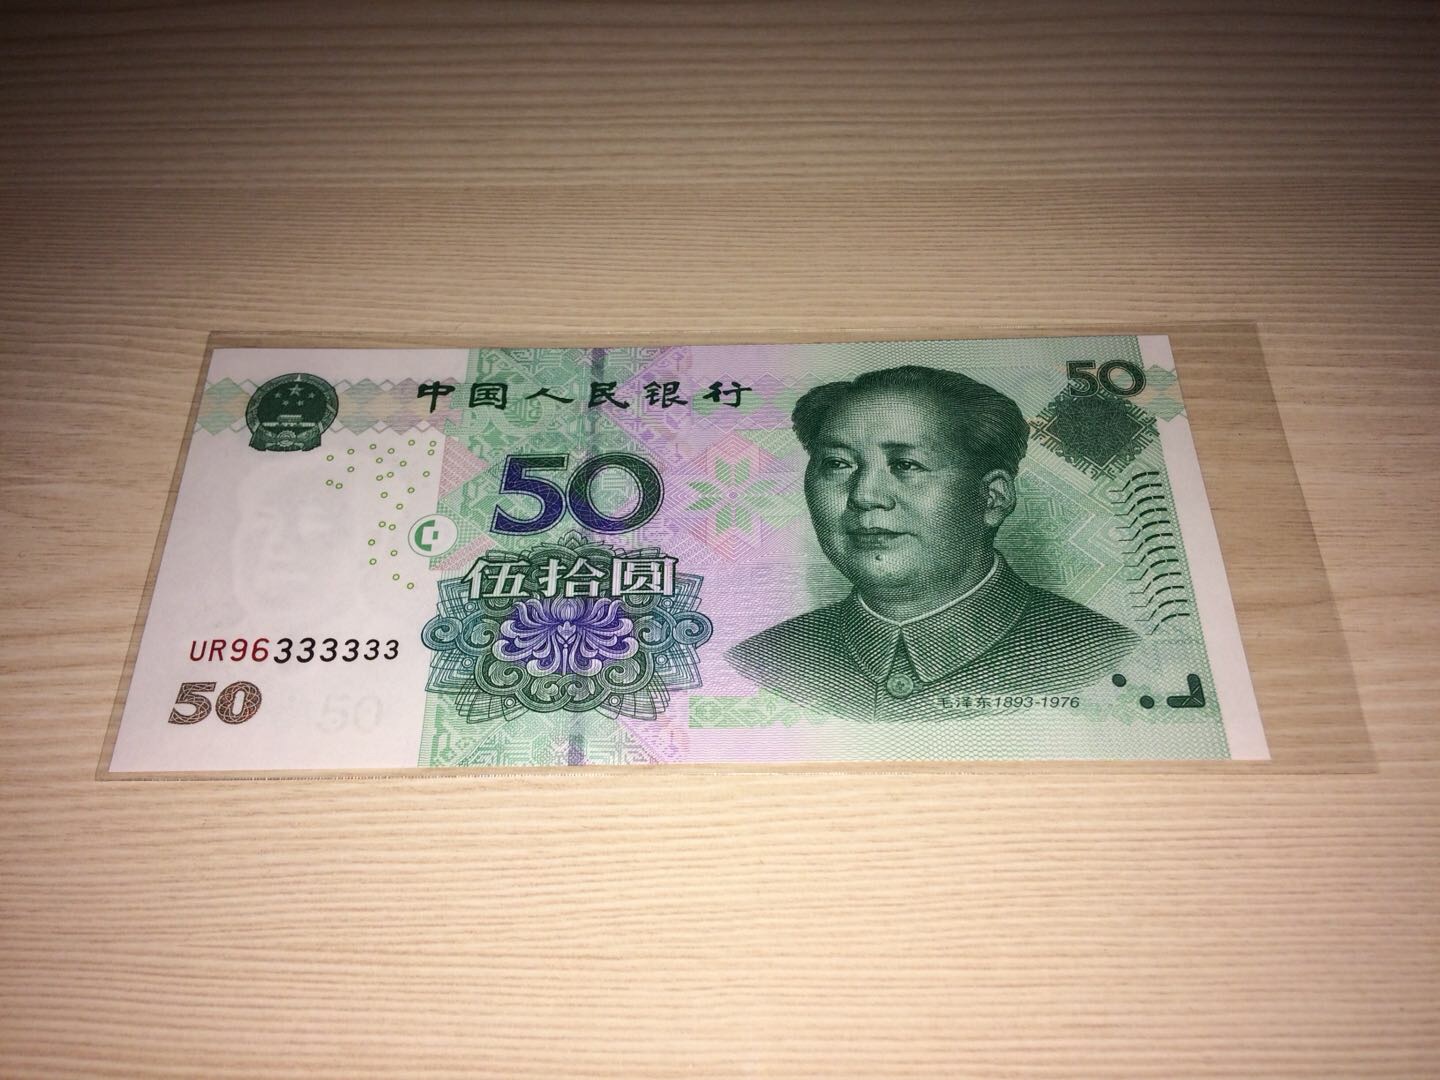 爱藏网 爱藏拍卖 纸币乐园 802《iq绿钻首发》一张,如 2019